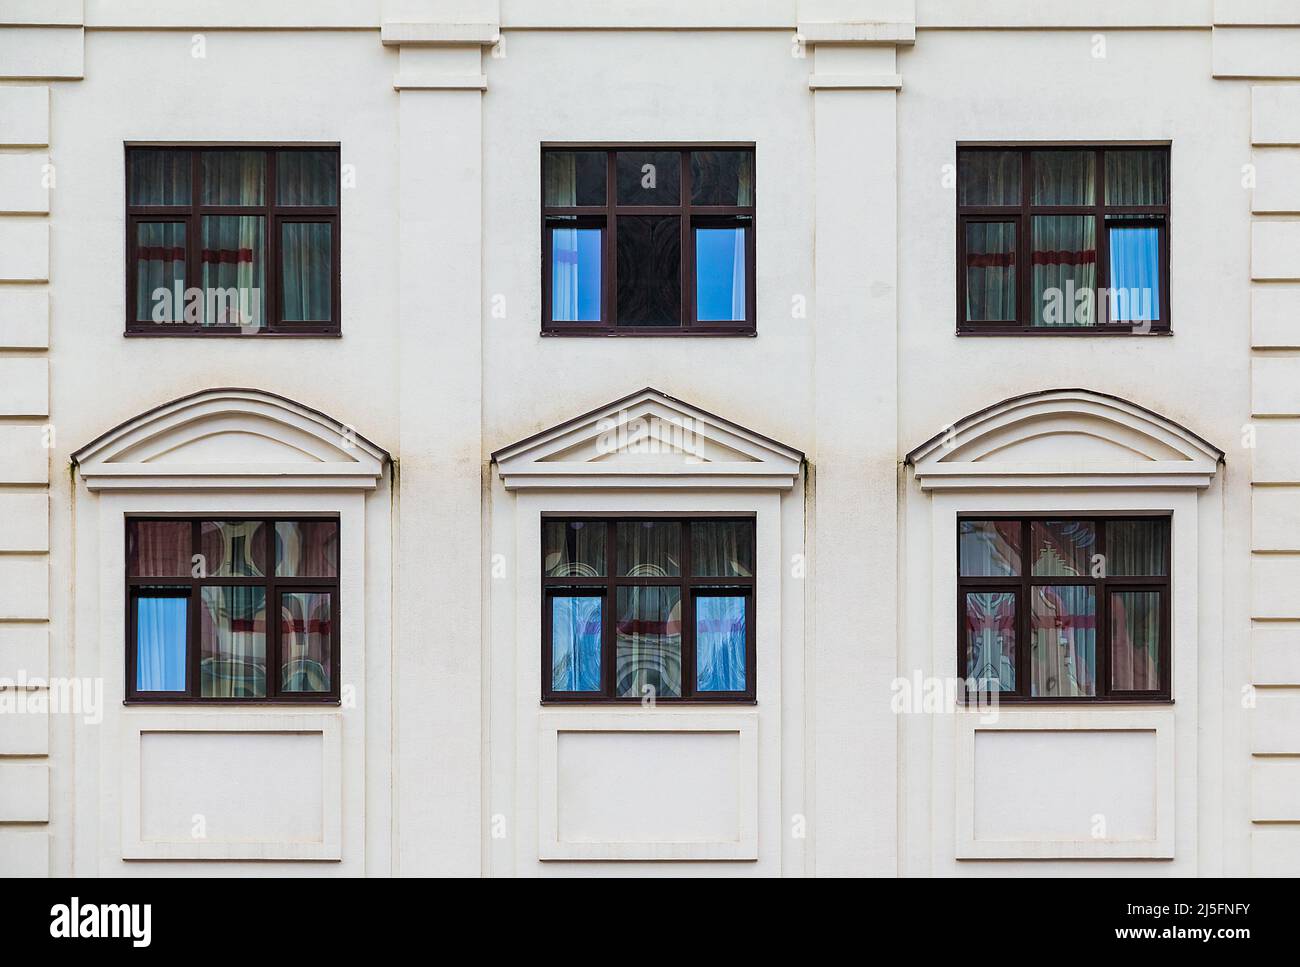 Plusieurs fenêtres dans une rangée sur la façade de l'immeuble moderne d'appartements urbains vue de face, Krasnaya Polyana, Sotchi, Krasnodar Krai, Russie Banque D'Images